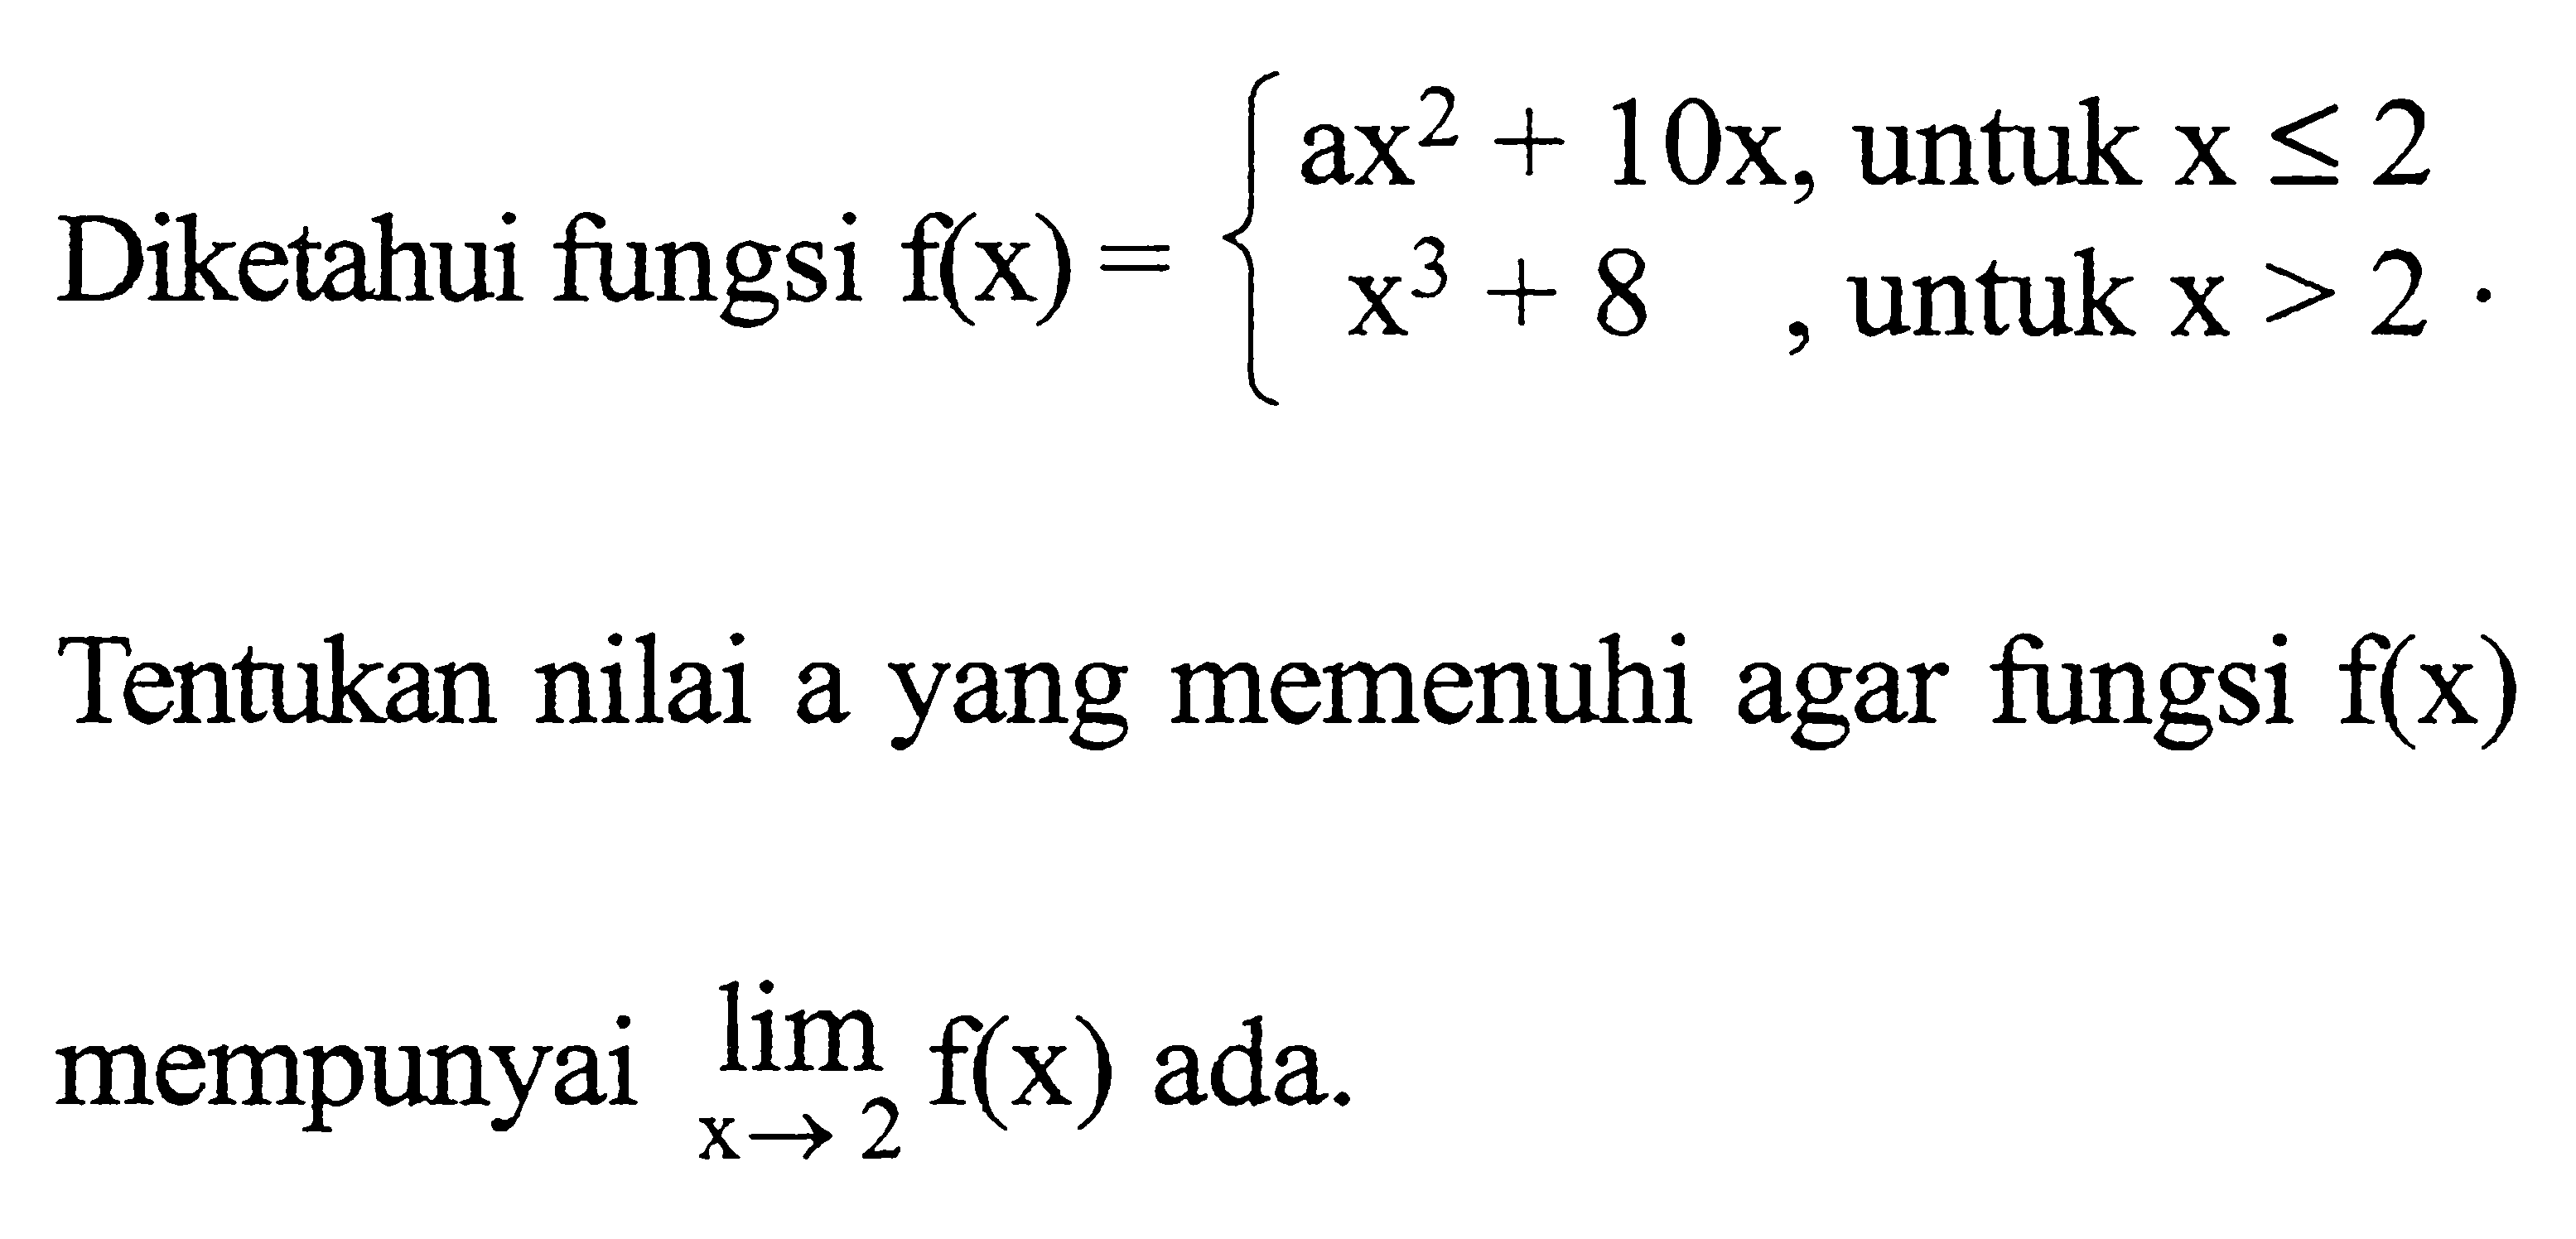 Diketahui fungsi f(x)={ ax^2+10x, untuk x <= 2 x^3+8, untuk x>2. Tentukan nilai a yang memenuhi agar fungsi f(x) mempunyai lim x -> 2 f(x) ada.